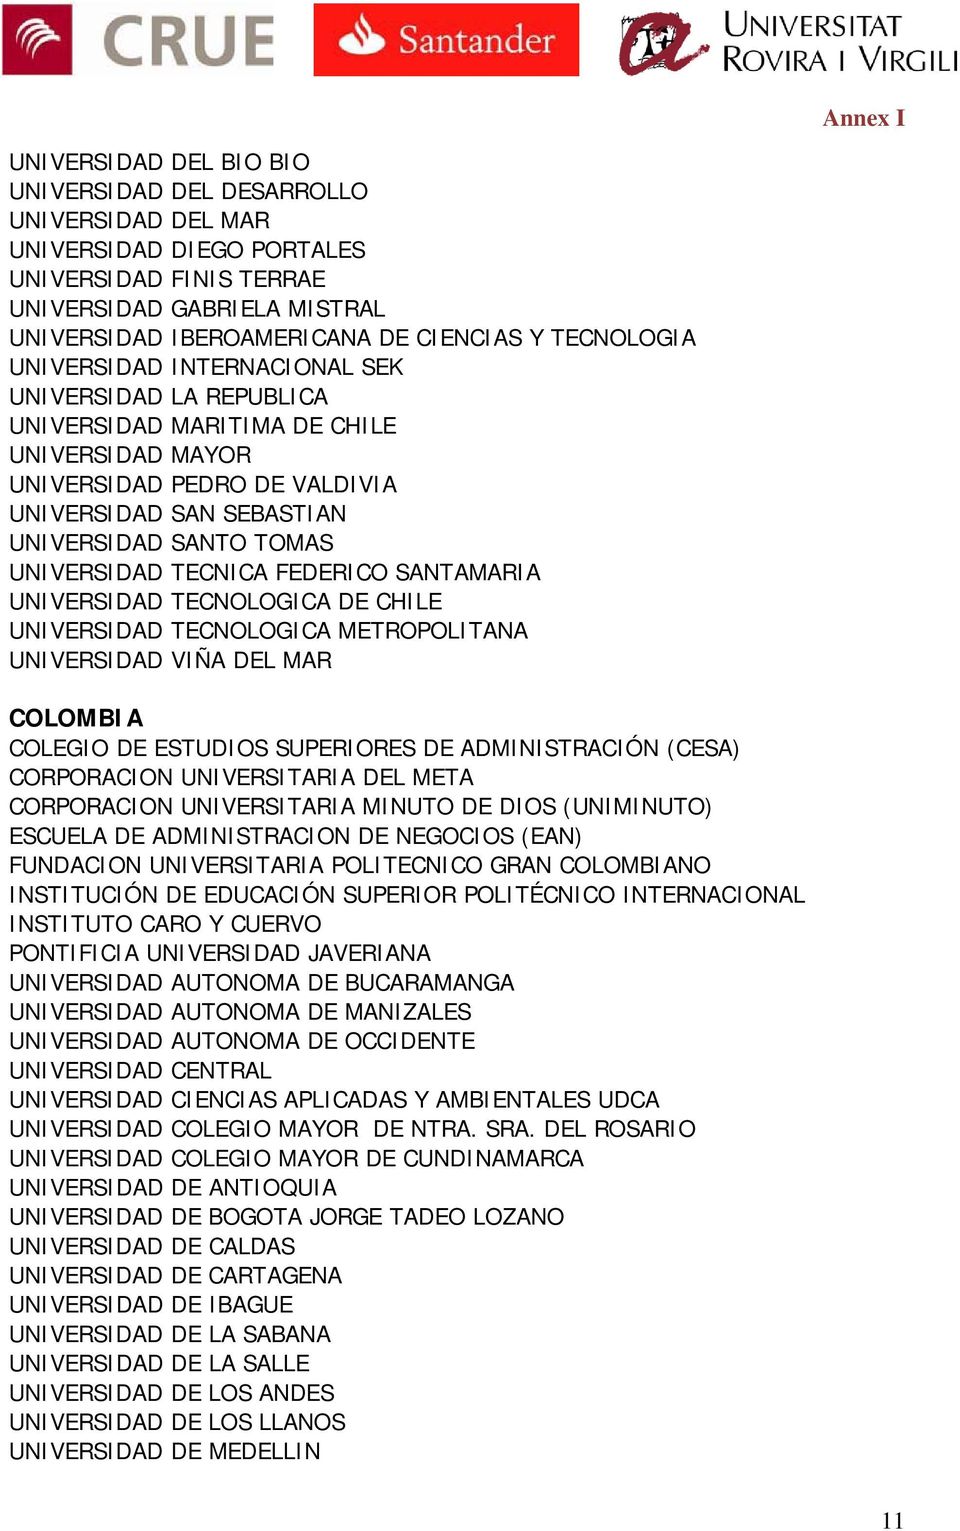 UNIVERSIDAD TECNICA FEDERICO SANTAMARIA UNIVERSIDAD TECNOLOGICA DE CHILE UNIVERSIDAD TECNOLOGICA METROPOLITANA UNIVERSIDAD VIÑA DEL MAR COLOMBIA COLEGIO DE ESTUDIOS SUPERIORES DE ADMINISTRACIÓN